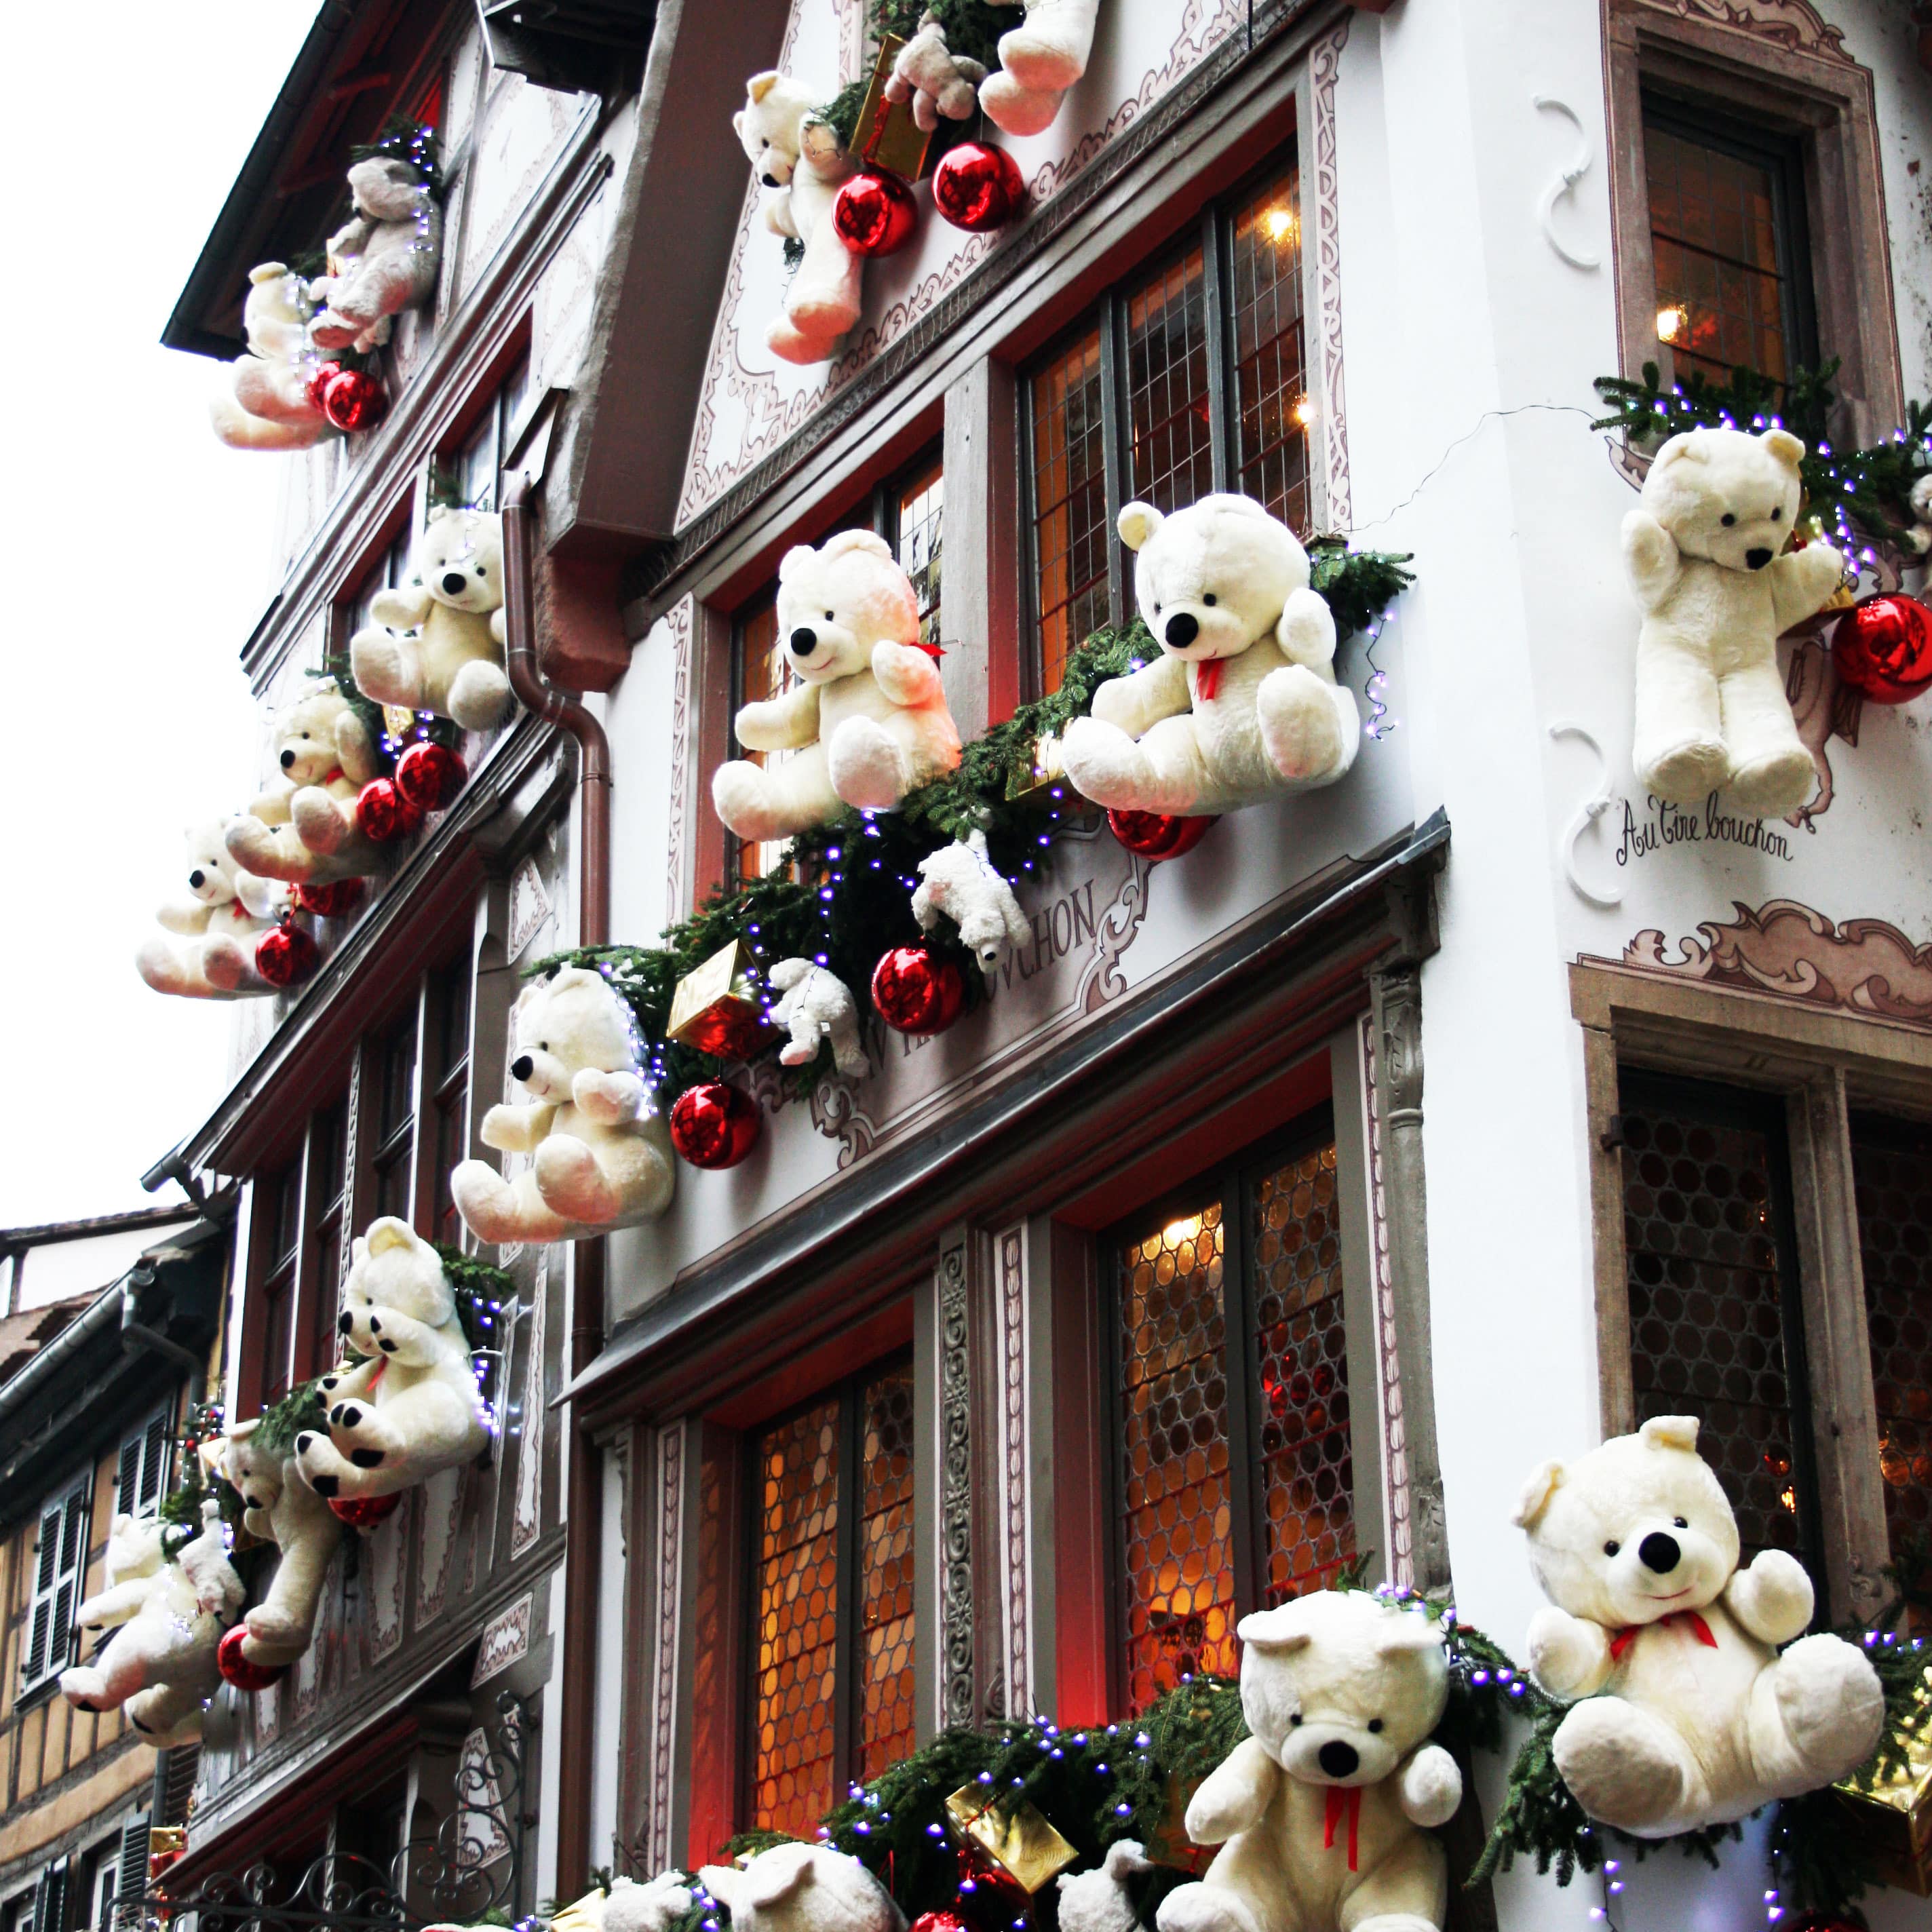 Location de vacances en Alsace : appart-hôtel à Strasbourg pour le marché de Noël